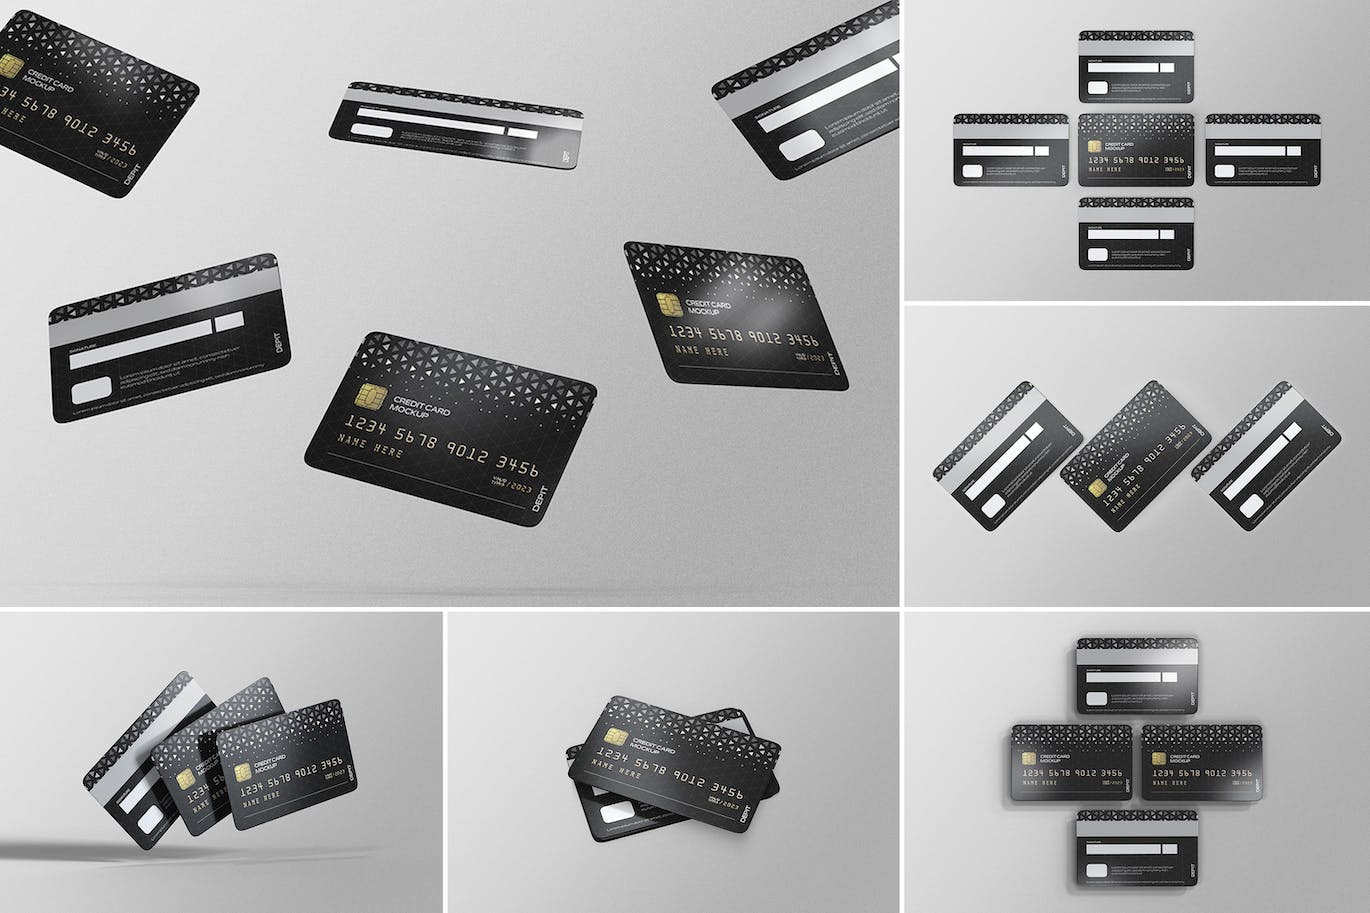 储蓄卡银行卡设计展示样机psd模板 Credit Card Mockups 样机素材 第1张